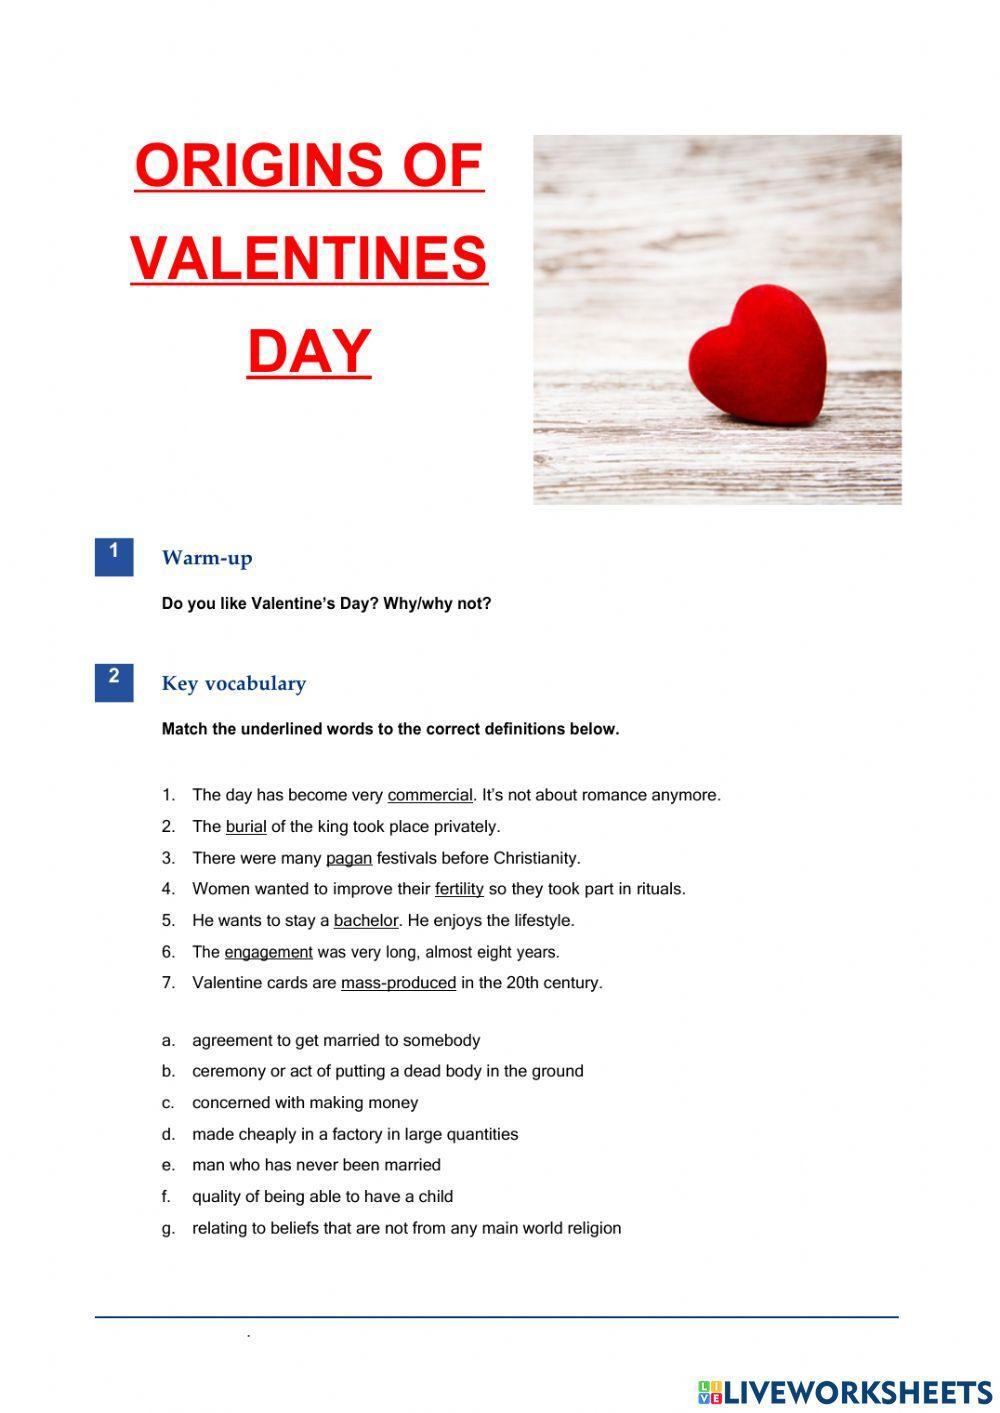 Origins of Valentines day